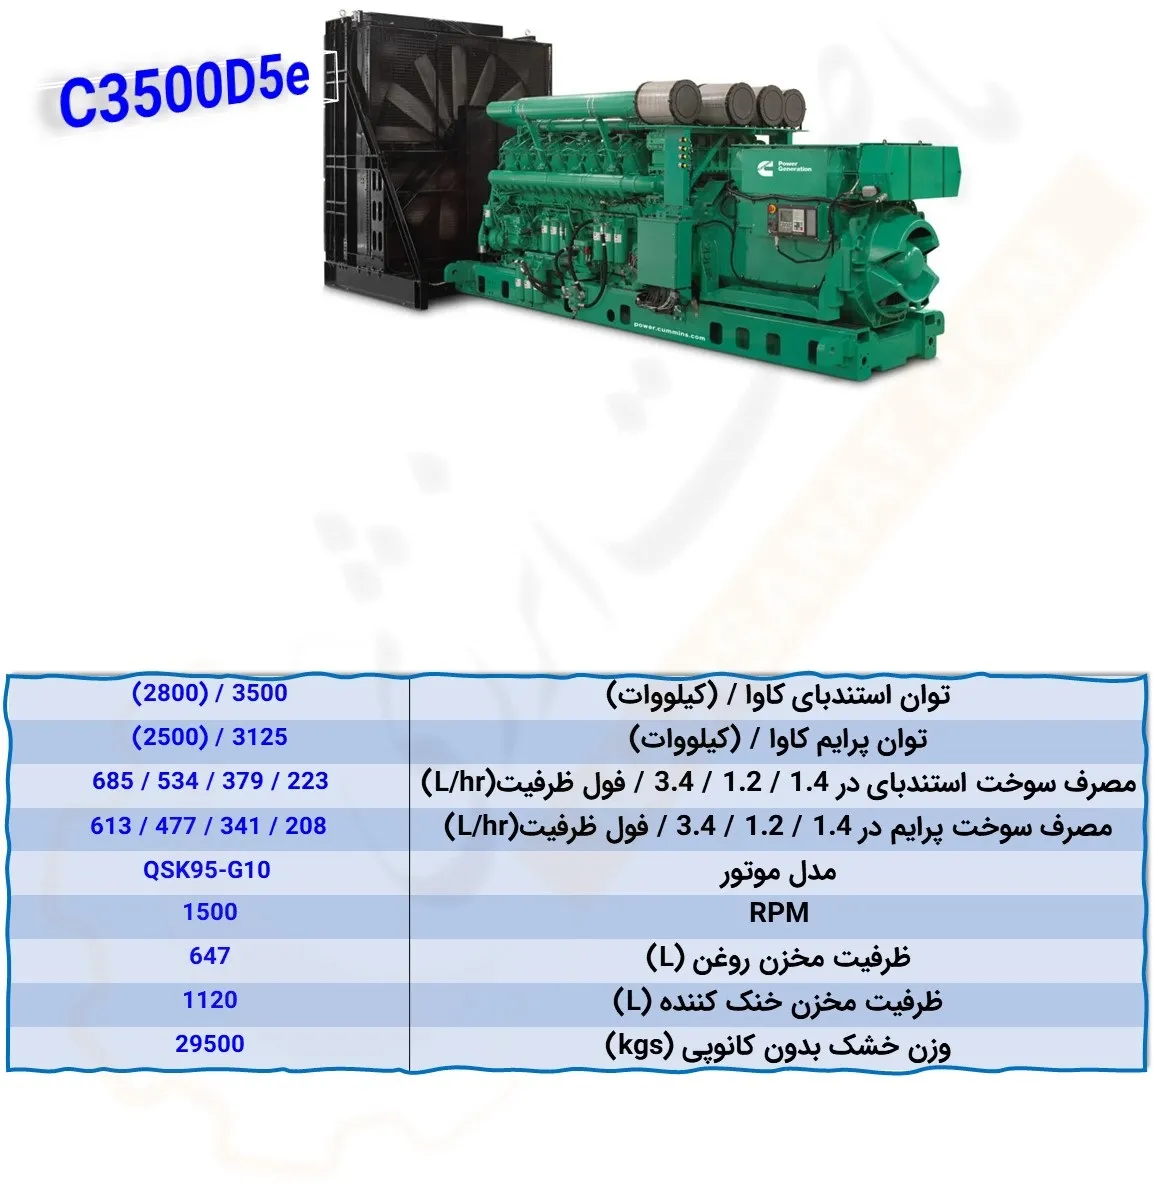 C3500D5e - ماه صنعت انرژی